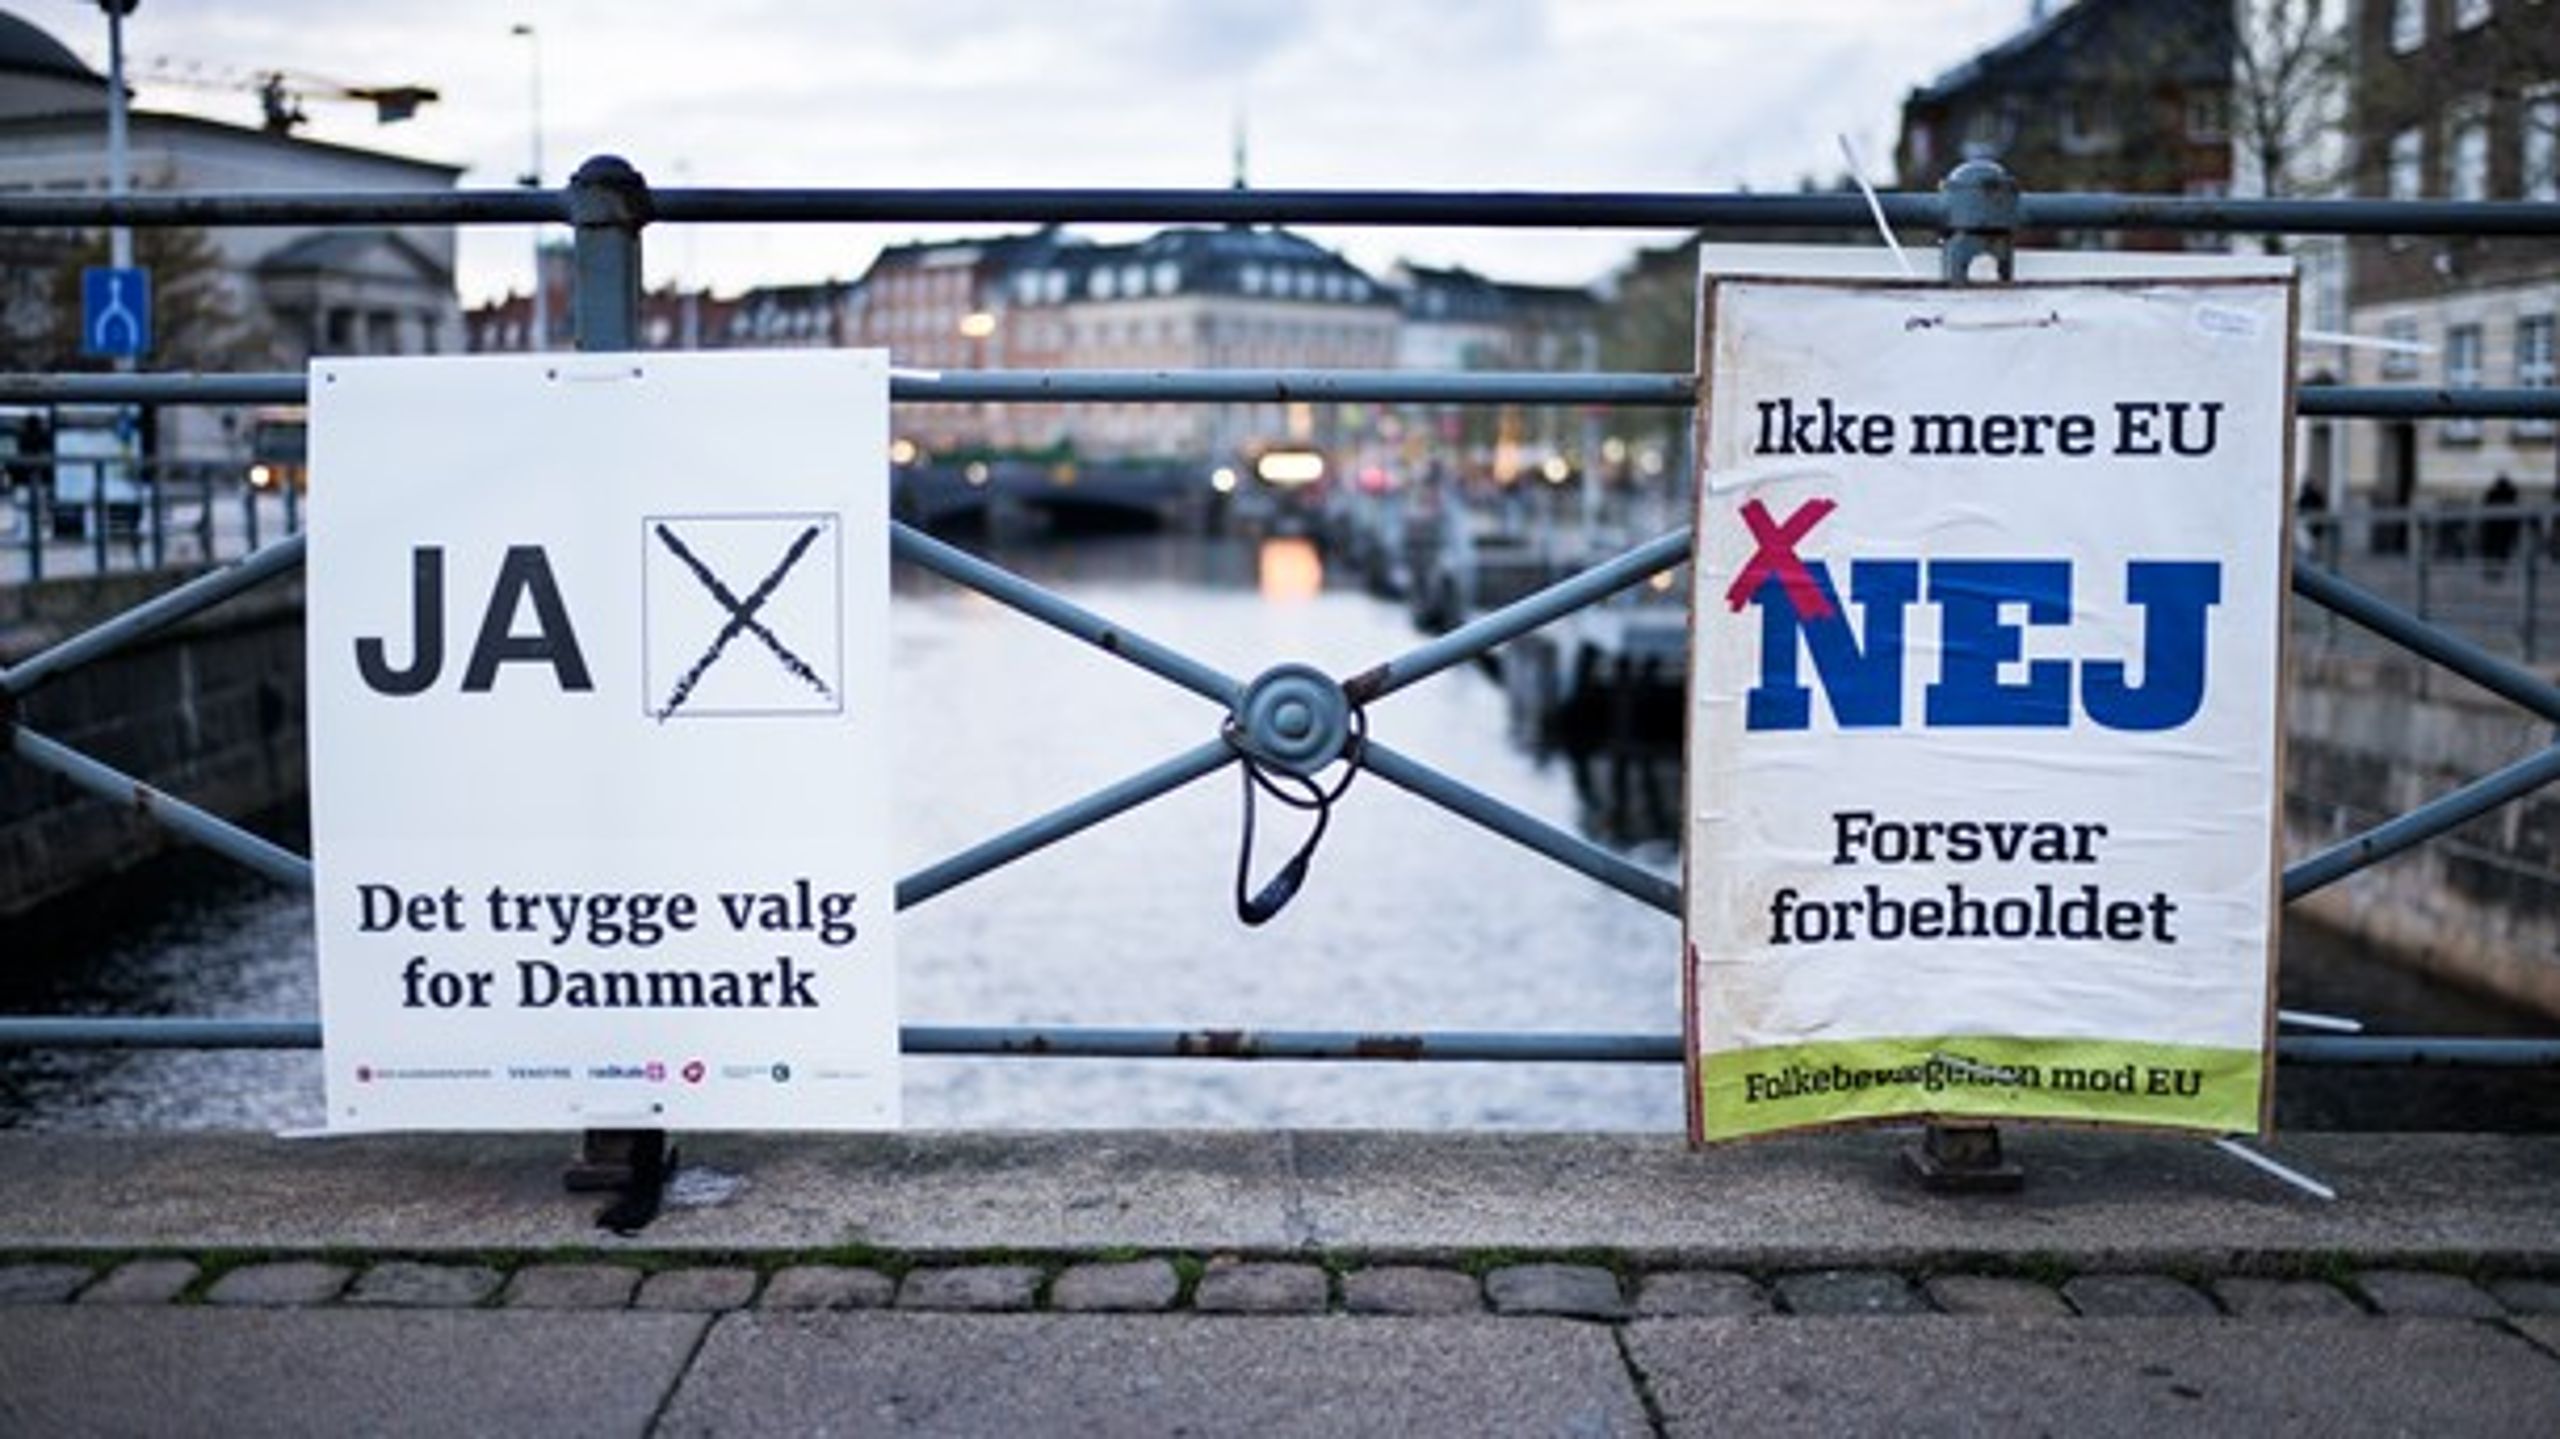 I december 2015 blev de danske vælgere bedt om at genoverveje retsforbeholdet i en folkeafstemning, der endte med en sejr til nej-siden. En ny måling viser, at danskerne stadig foretrækker status quo på spørgsmålet om EU-forbeholdene.